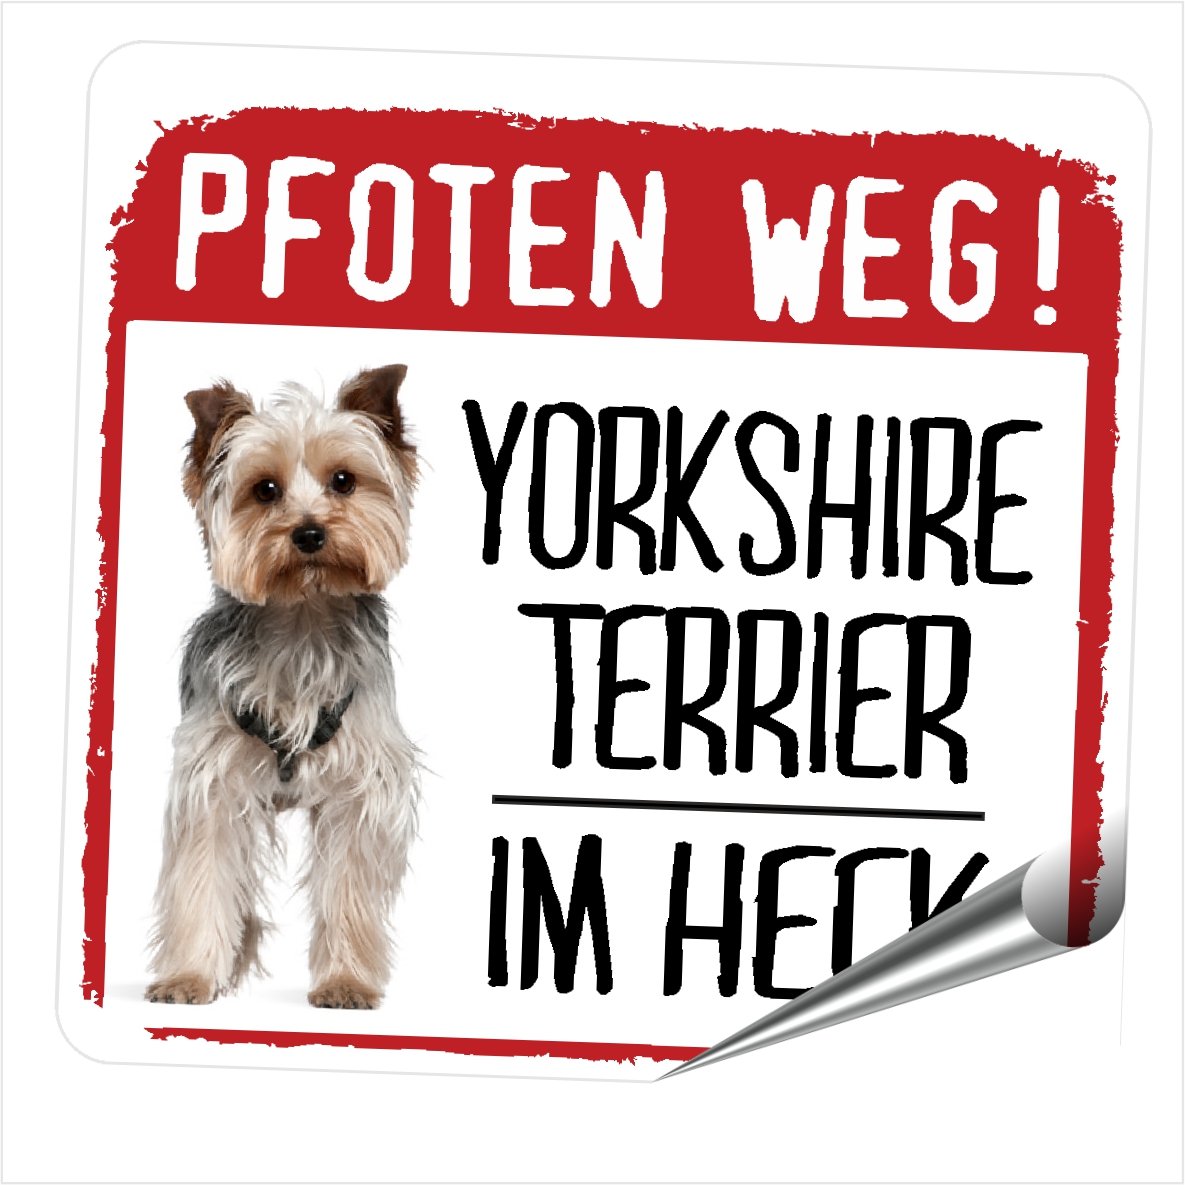 siviwonder Yorkie Yorkshire Terrier Pfoten Weg Hundeaufkleber REFLEKTIEREND Reflective Auto Aufkleber von siviwonder